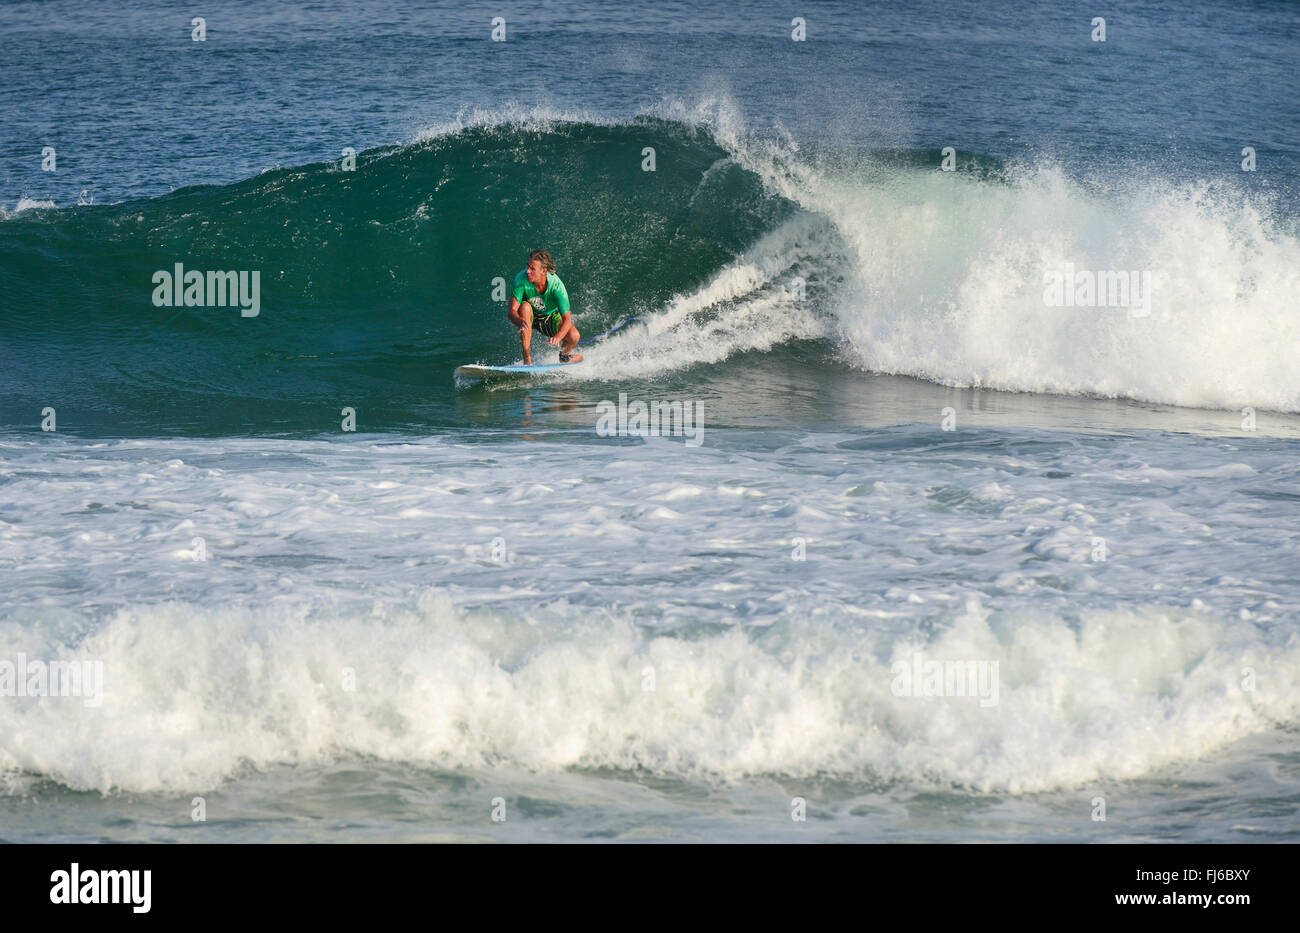 surfer riding a wave, France, Landes, Hossegor Stock Photo